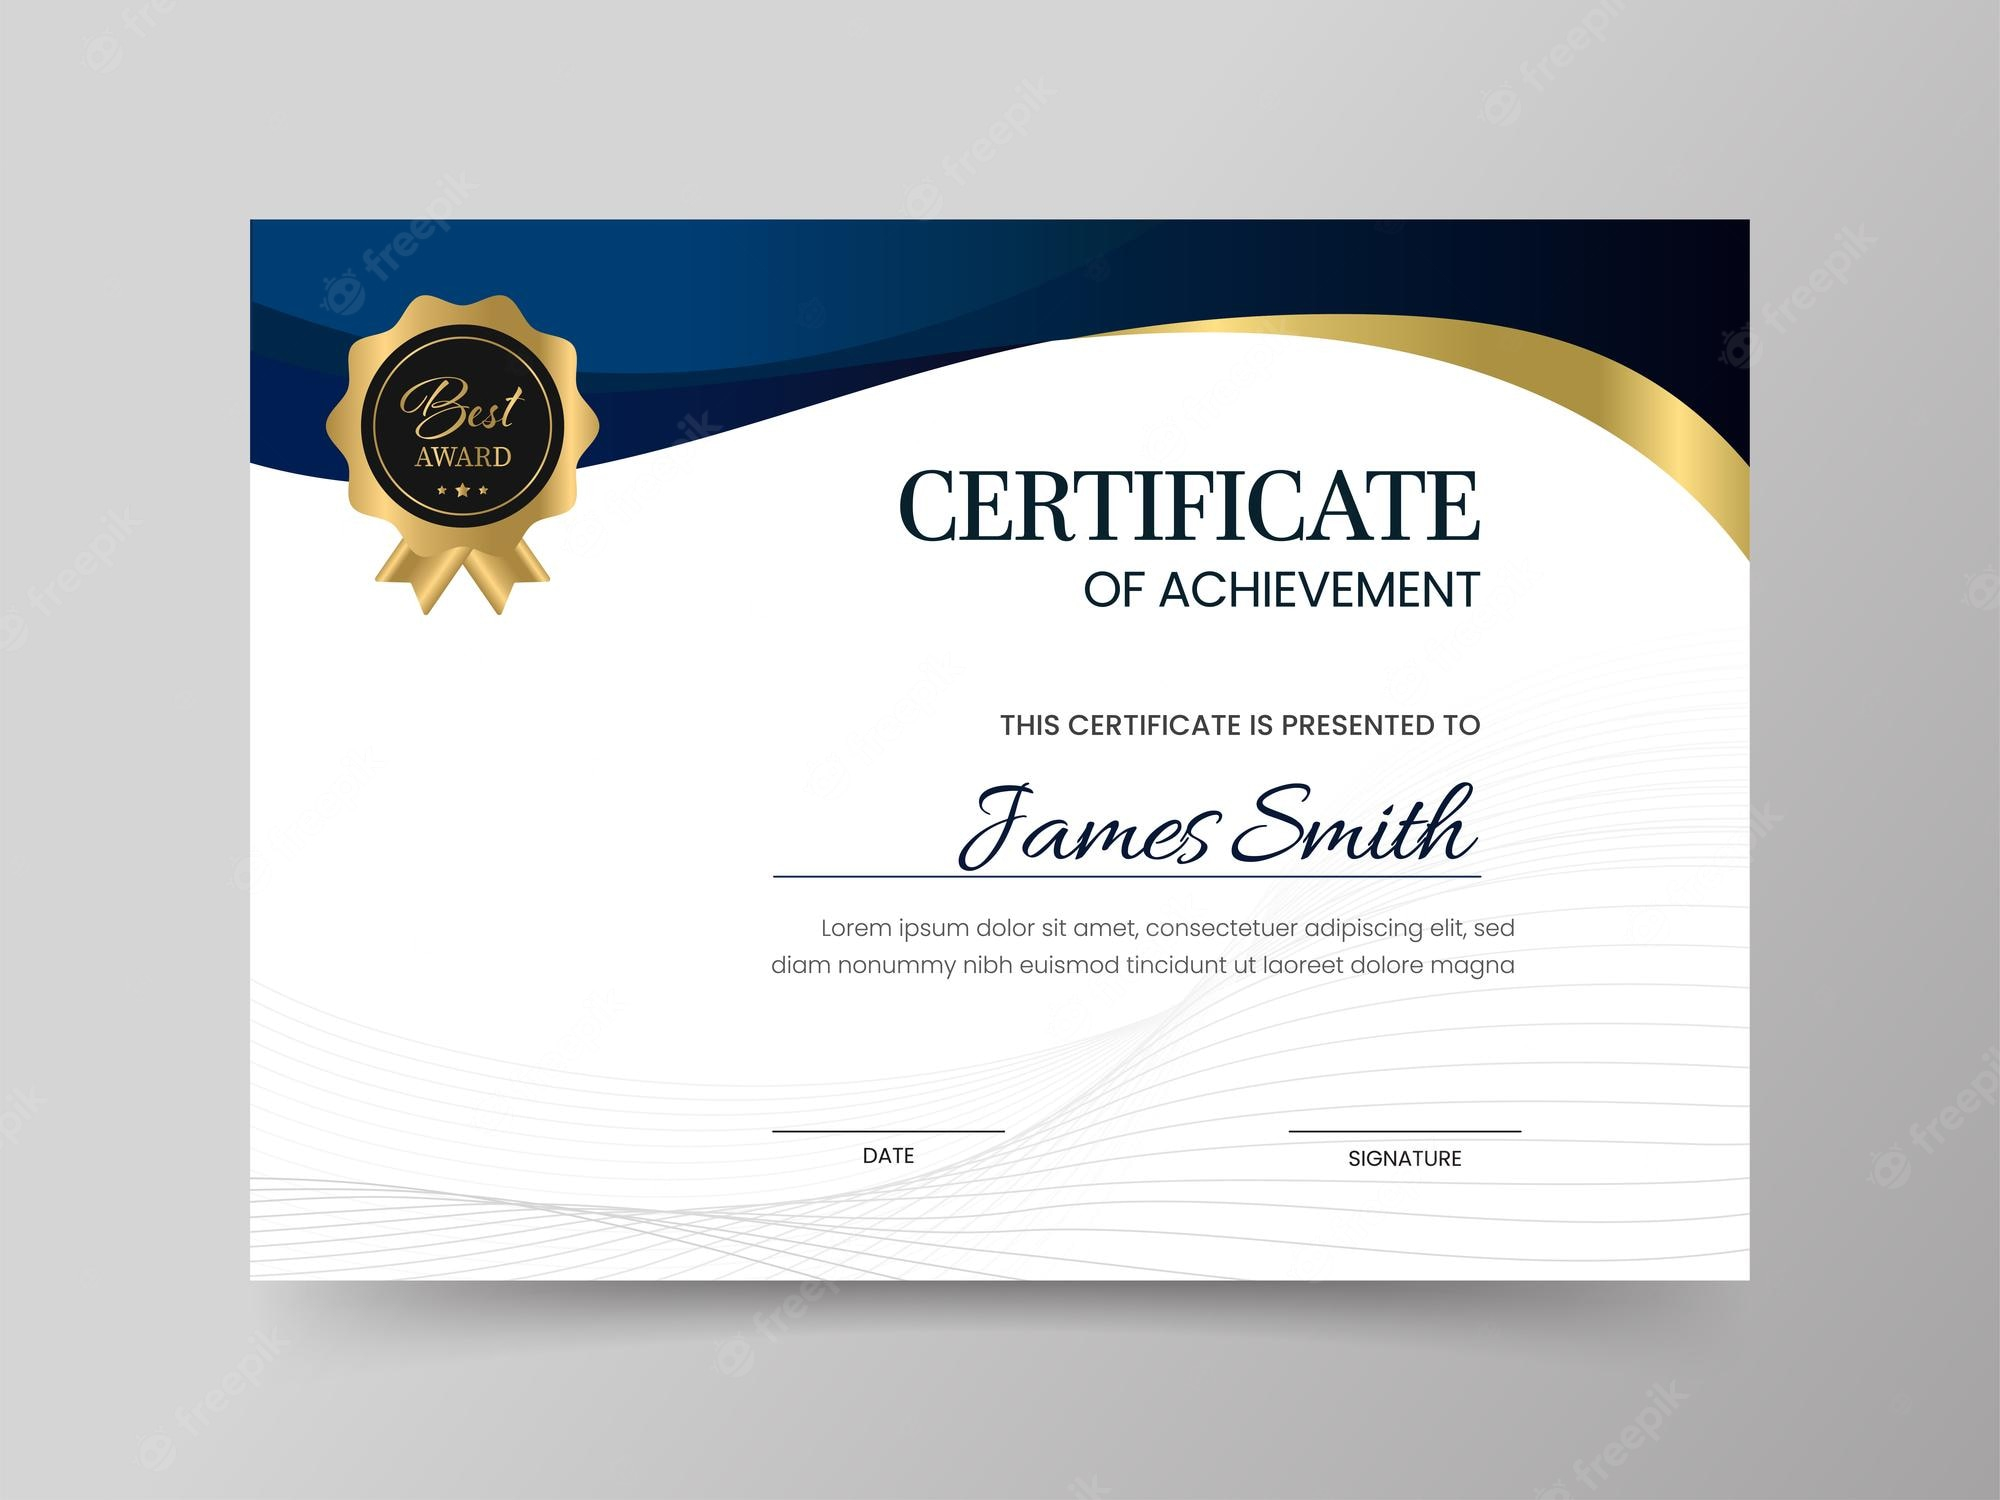 Premium Vector  Certificate of achievement template layout in  With Certificate Of Attainment Template